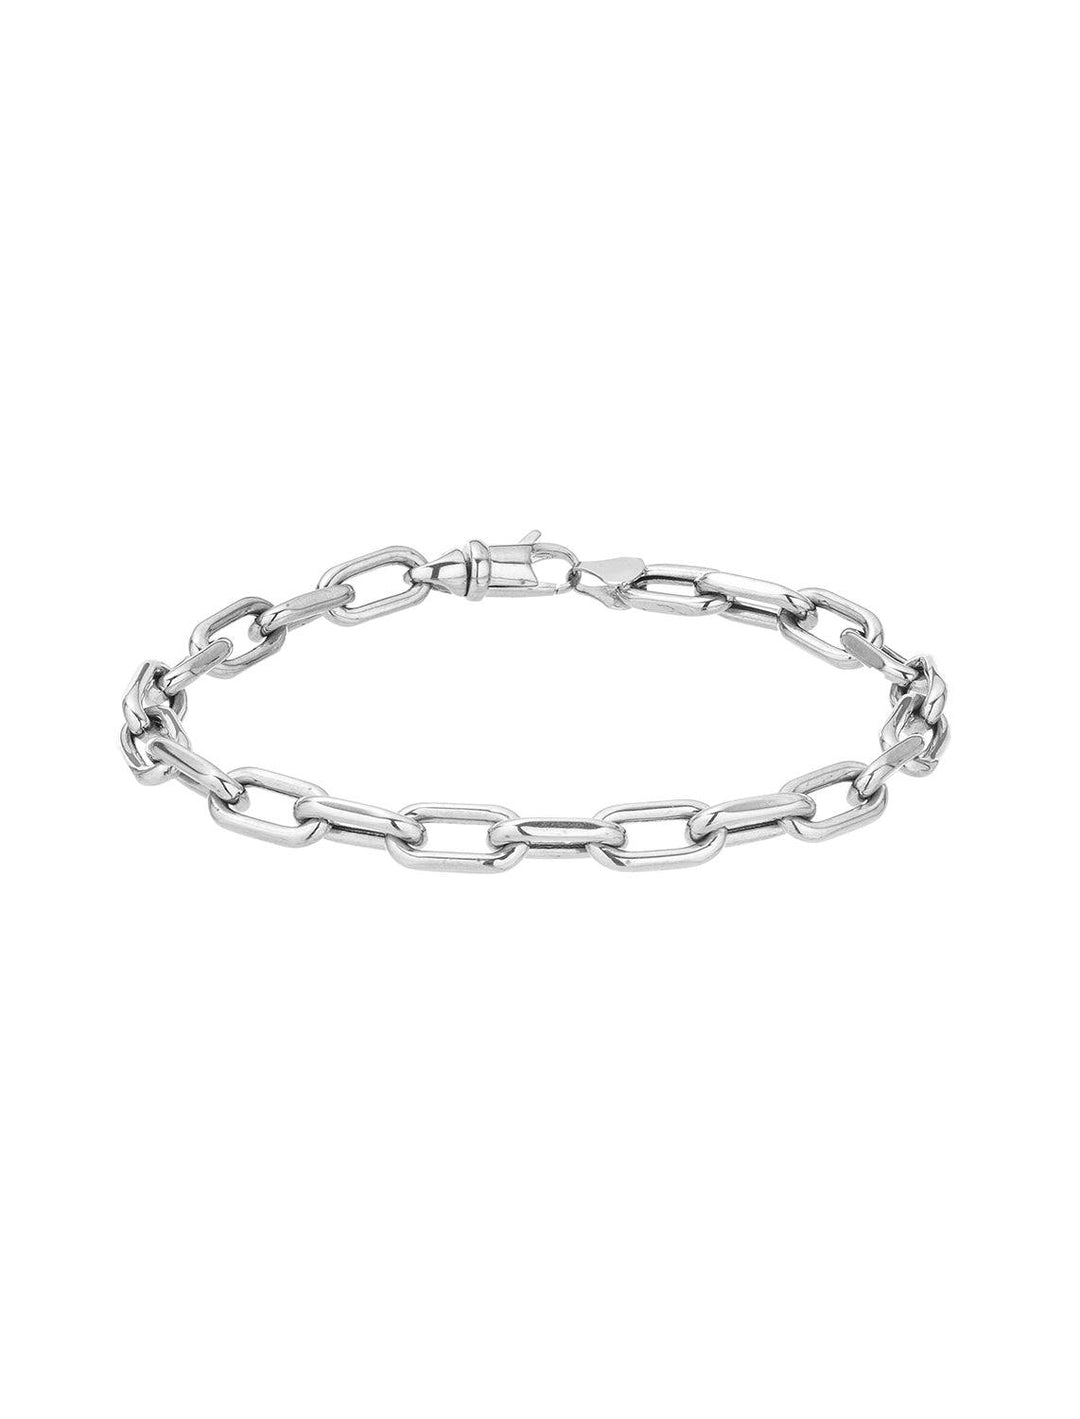 5.3mm wide Italian chain link bracelet in silver